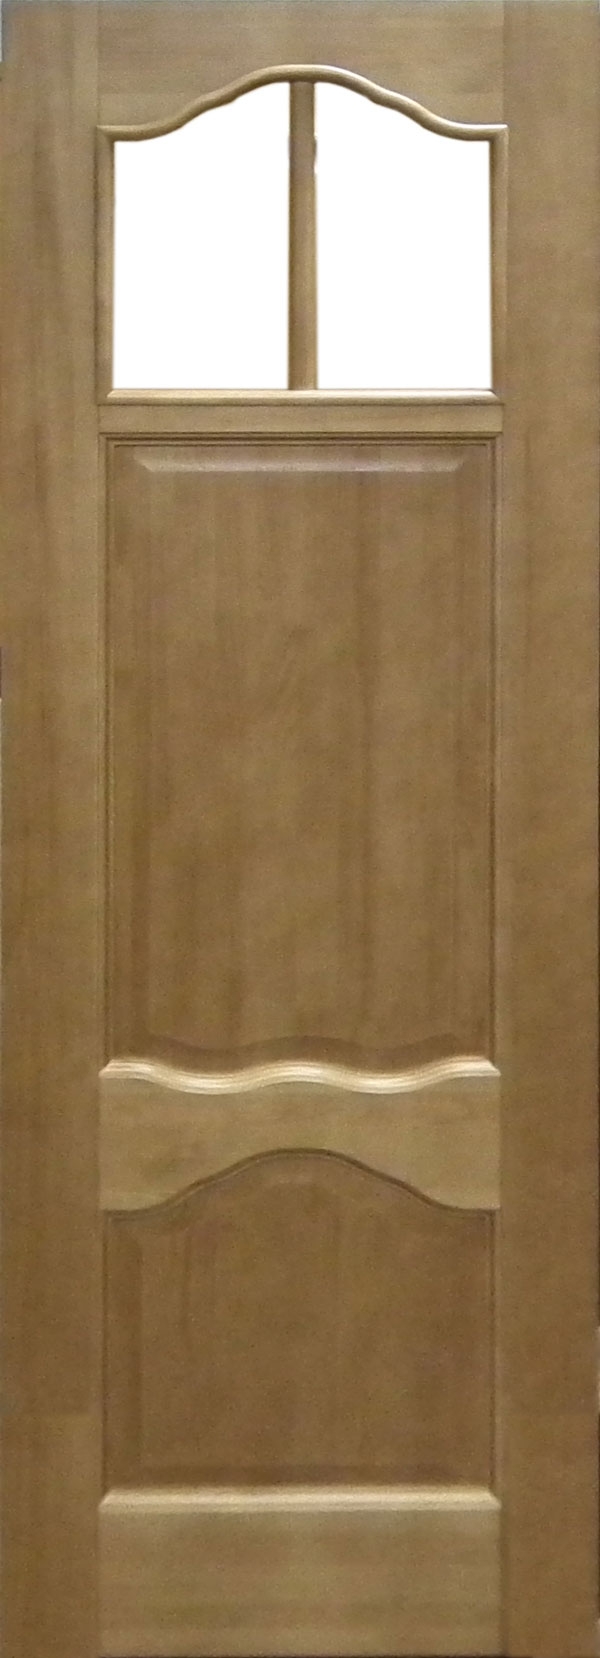 Pušinės durys stiklintos (M1- Dalinai stiklintos)